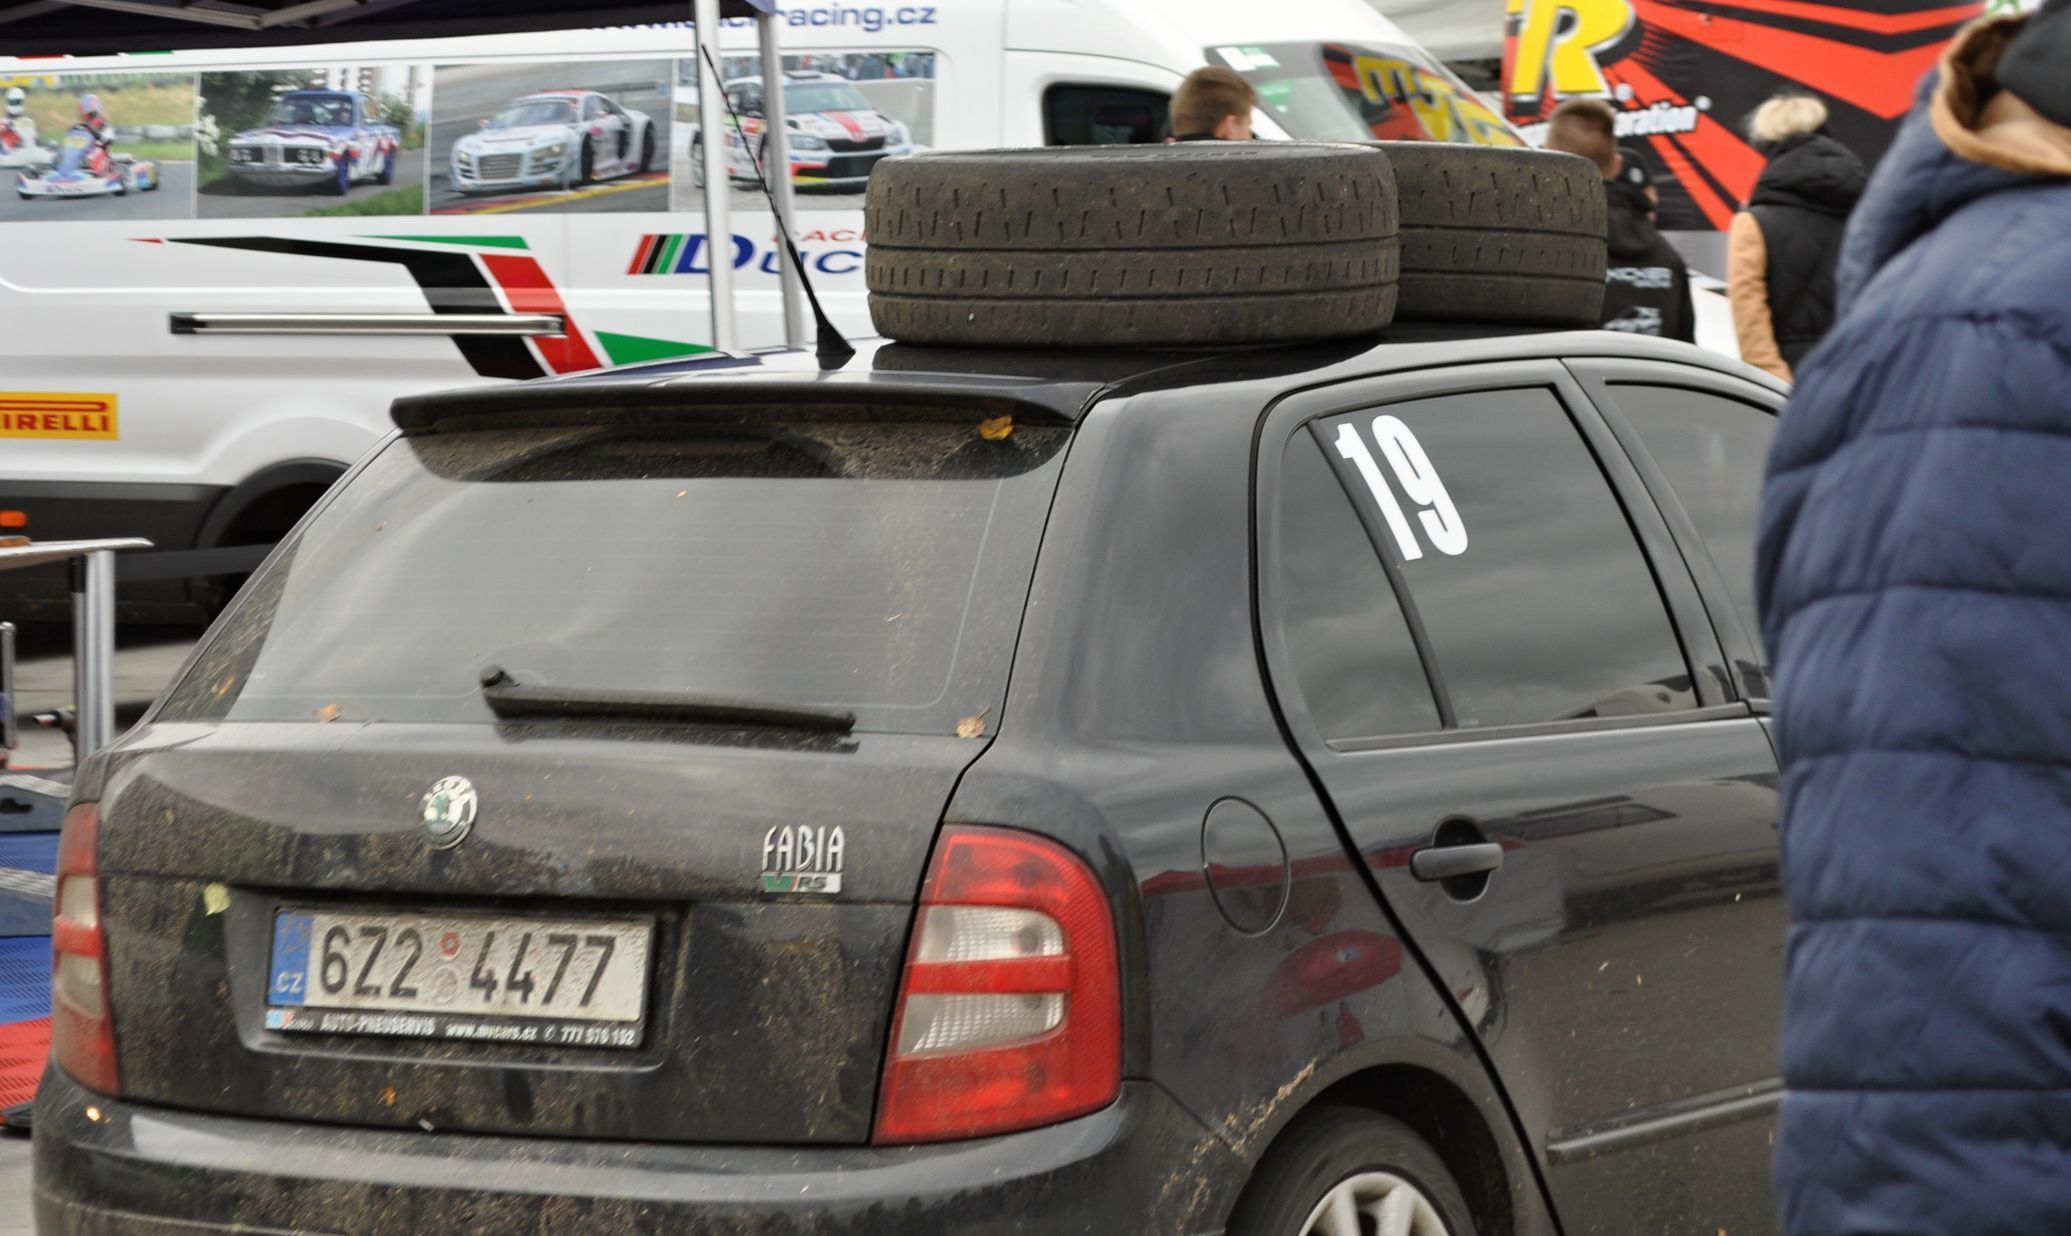 Rallye Pačejov 2020